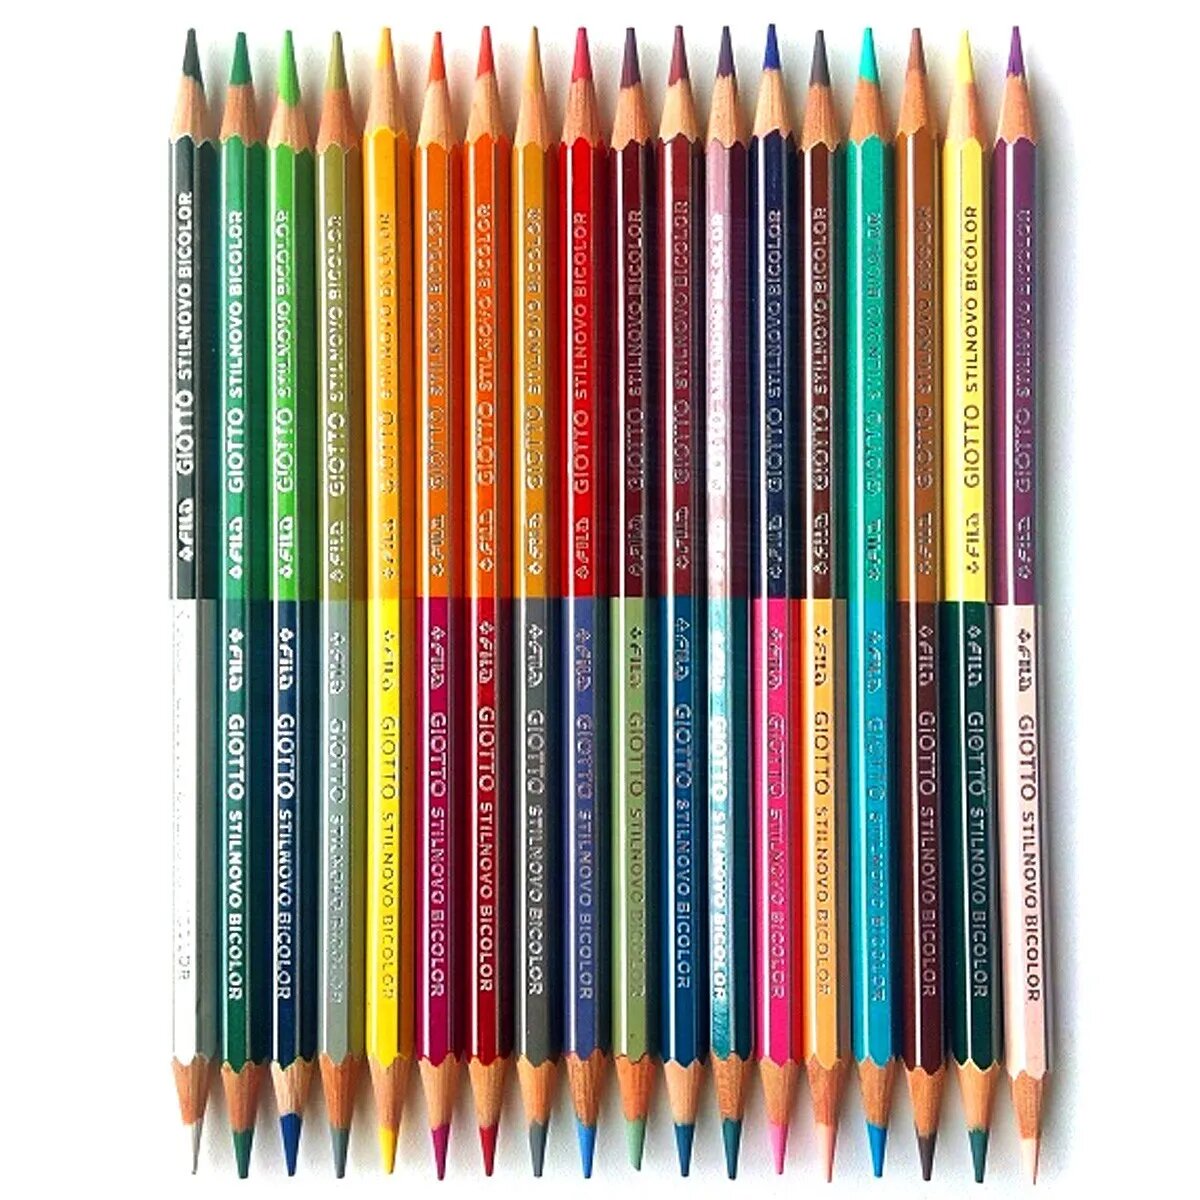 Набор карандашей цветных гексогональных, двусто Fila Giotto 